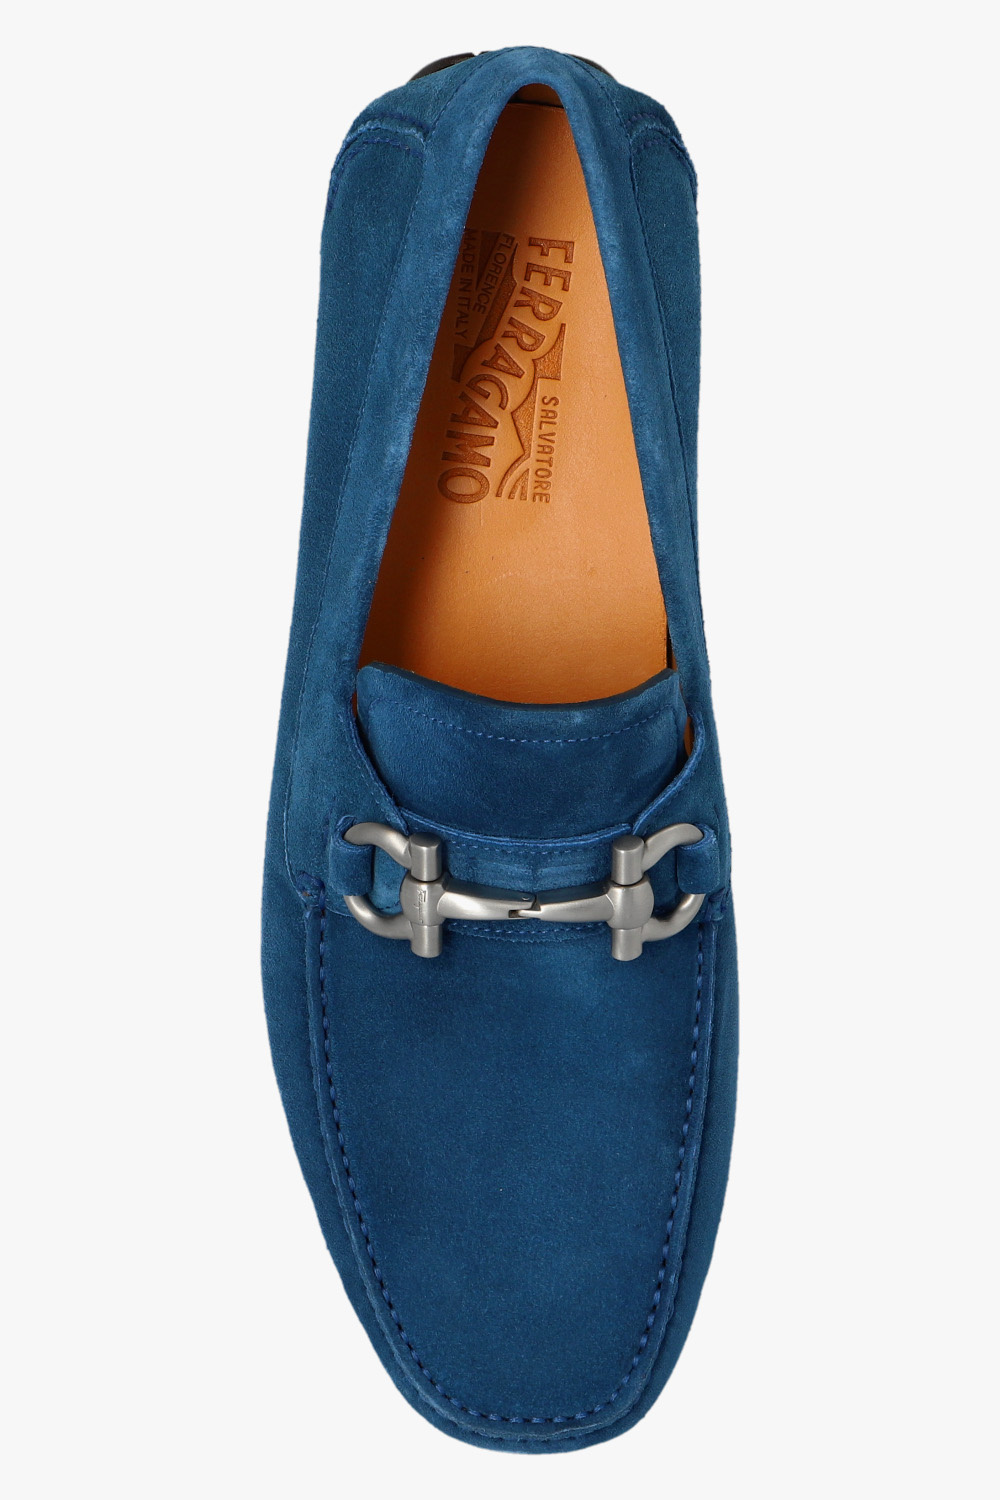 Salvatore Ferragamo ‘Parigi’ leather Gardening shoes